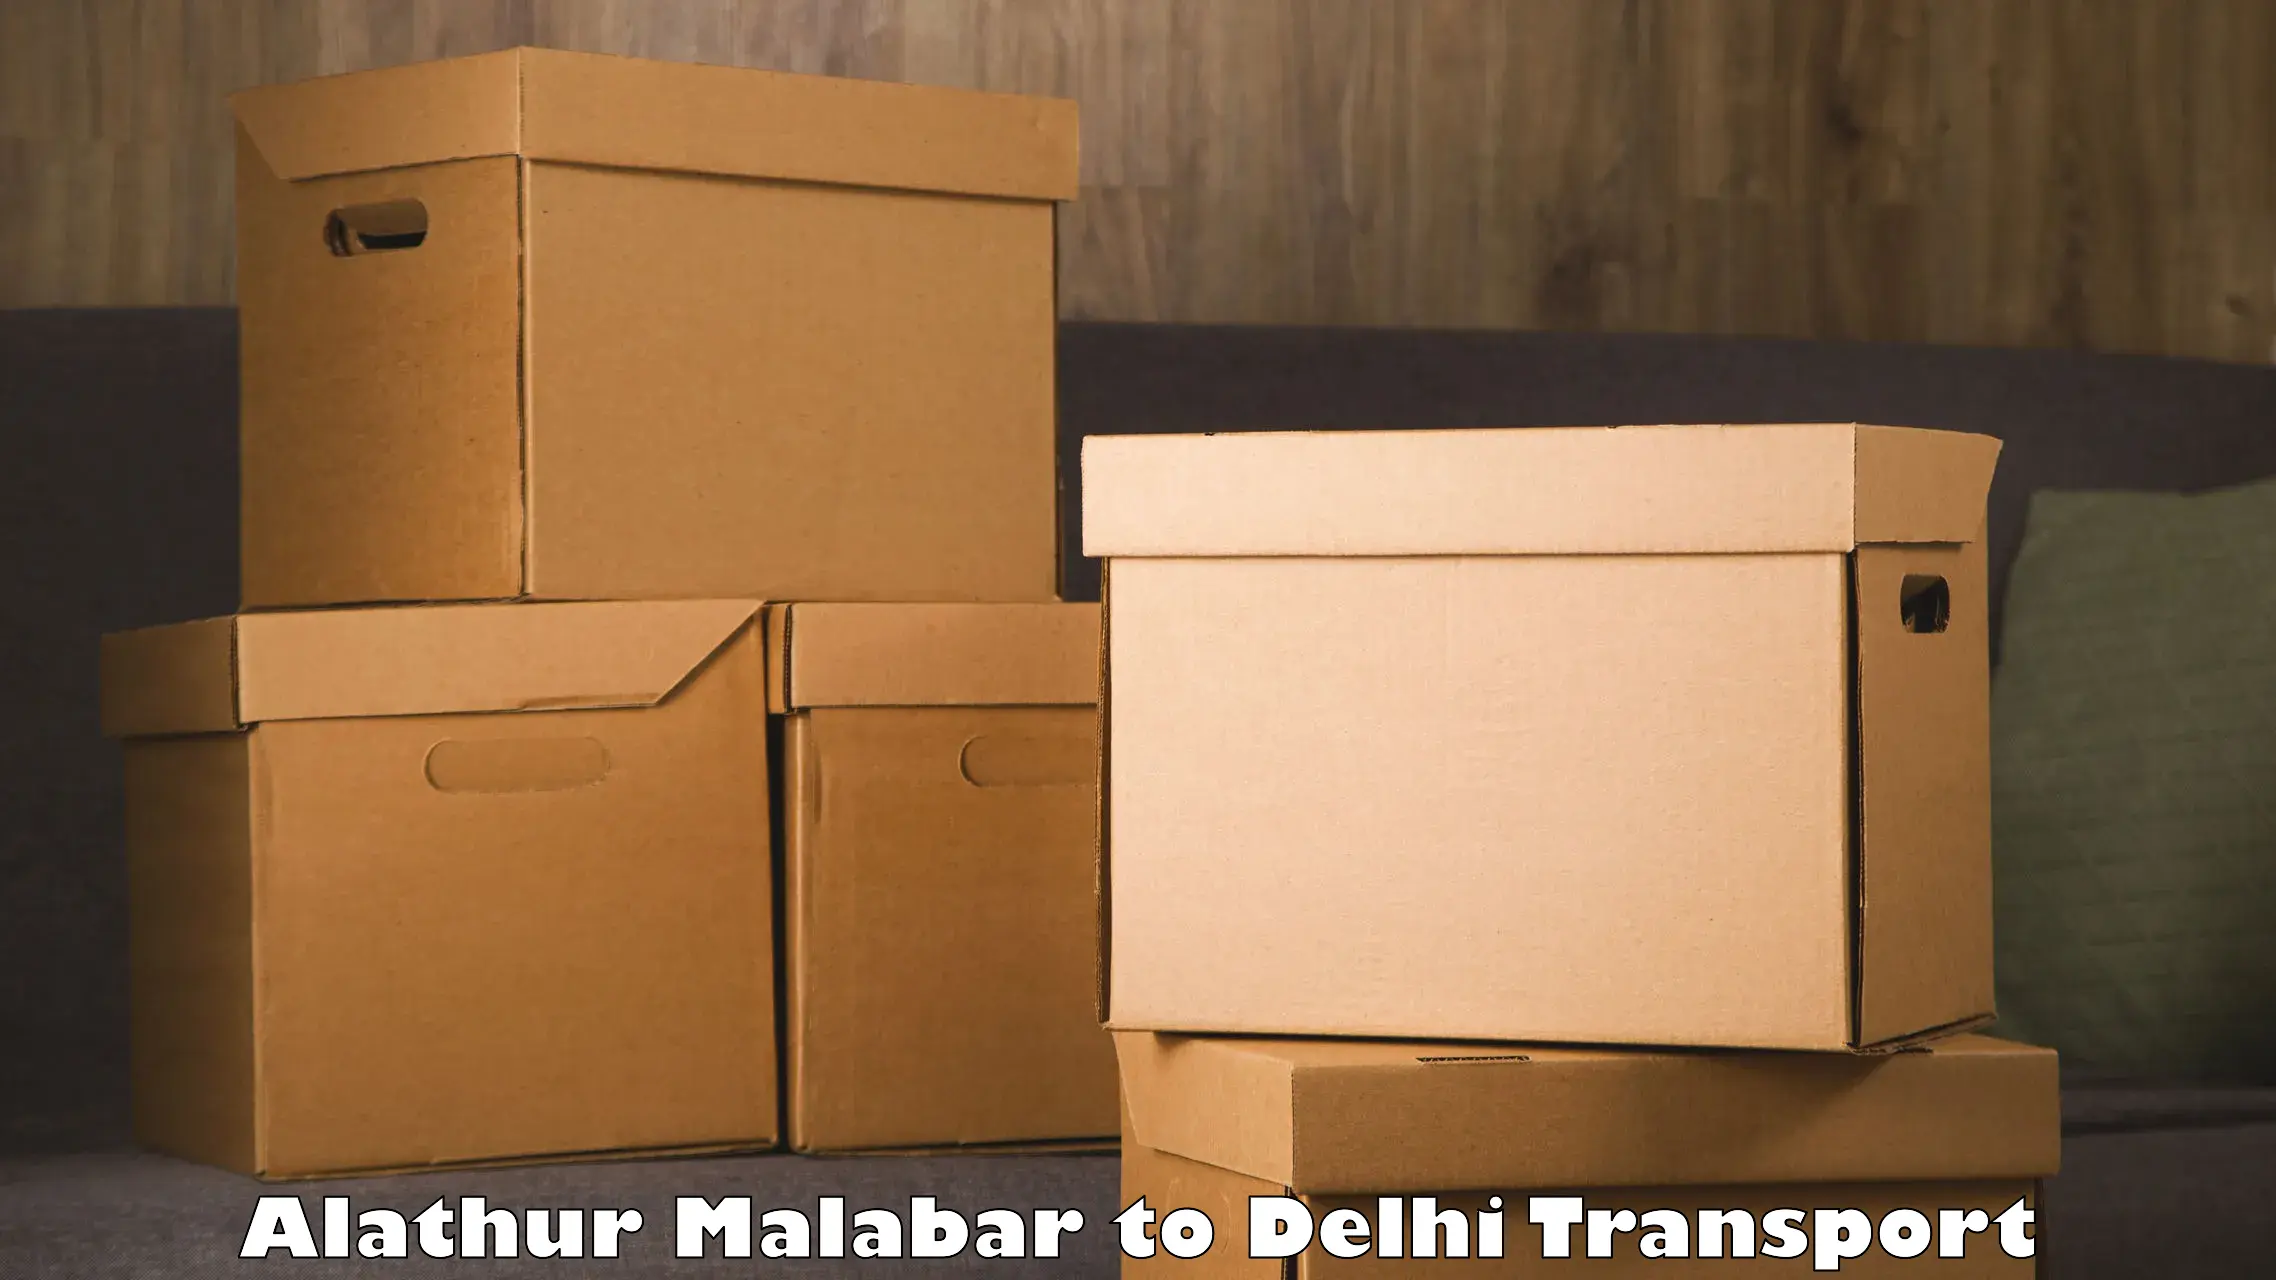 Two wheeler transport services Alathur Malabar to Jamia Millia Islamia New Delhi